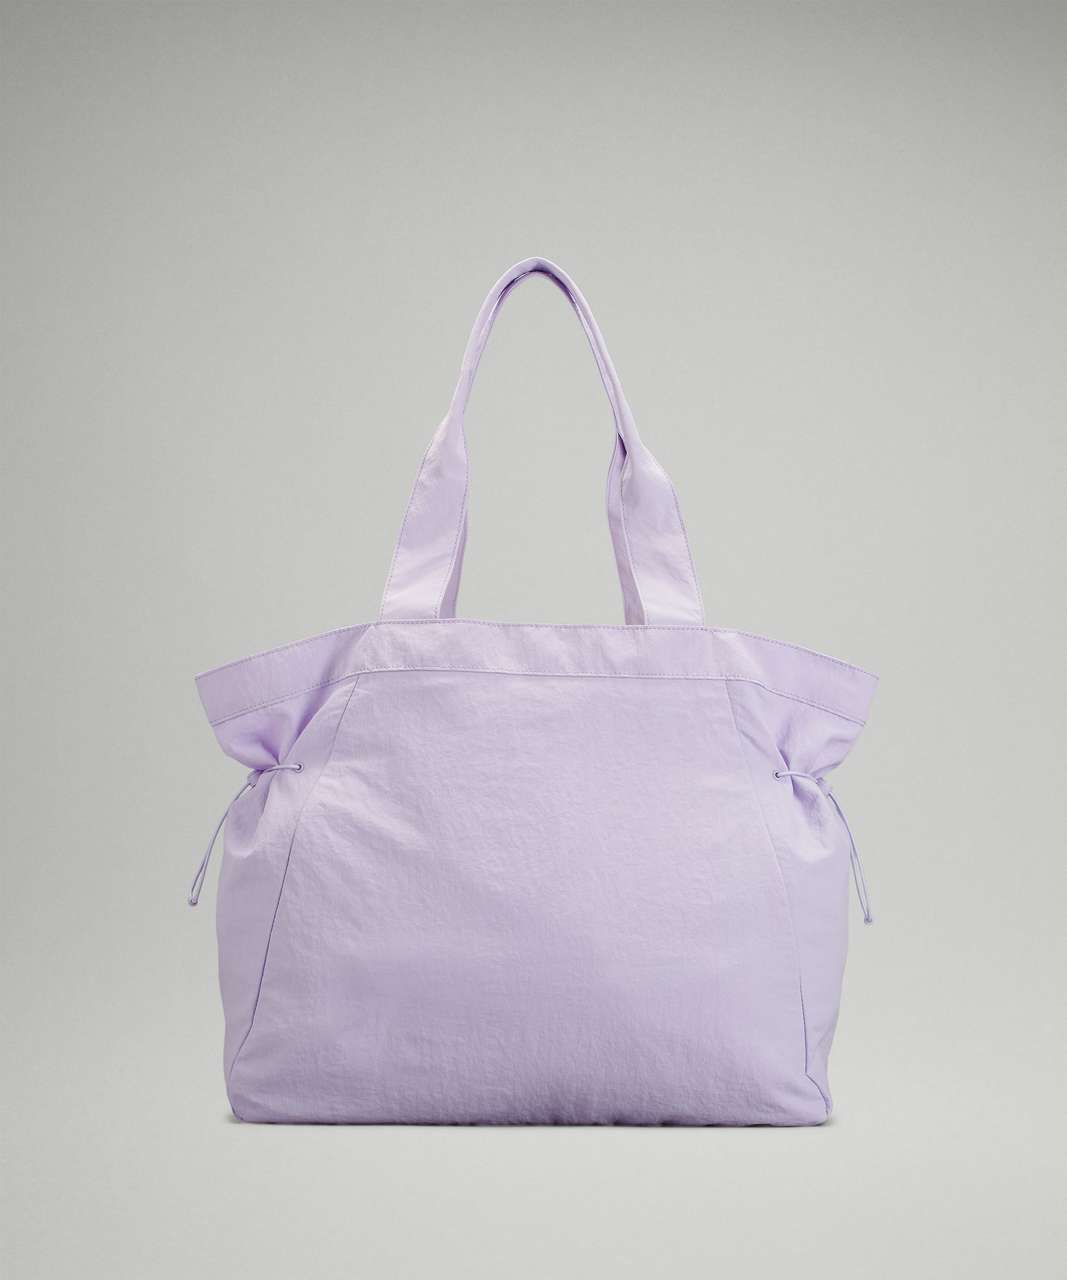 Lululemon Side-Cinch Shopper Bag 18L - Lavender Fog